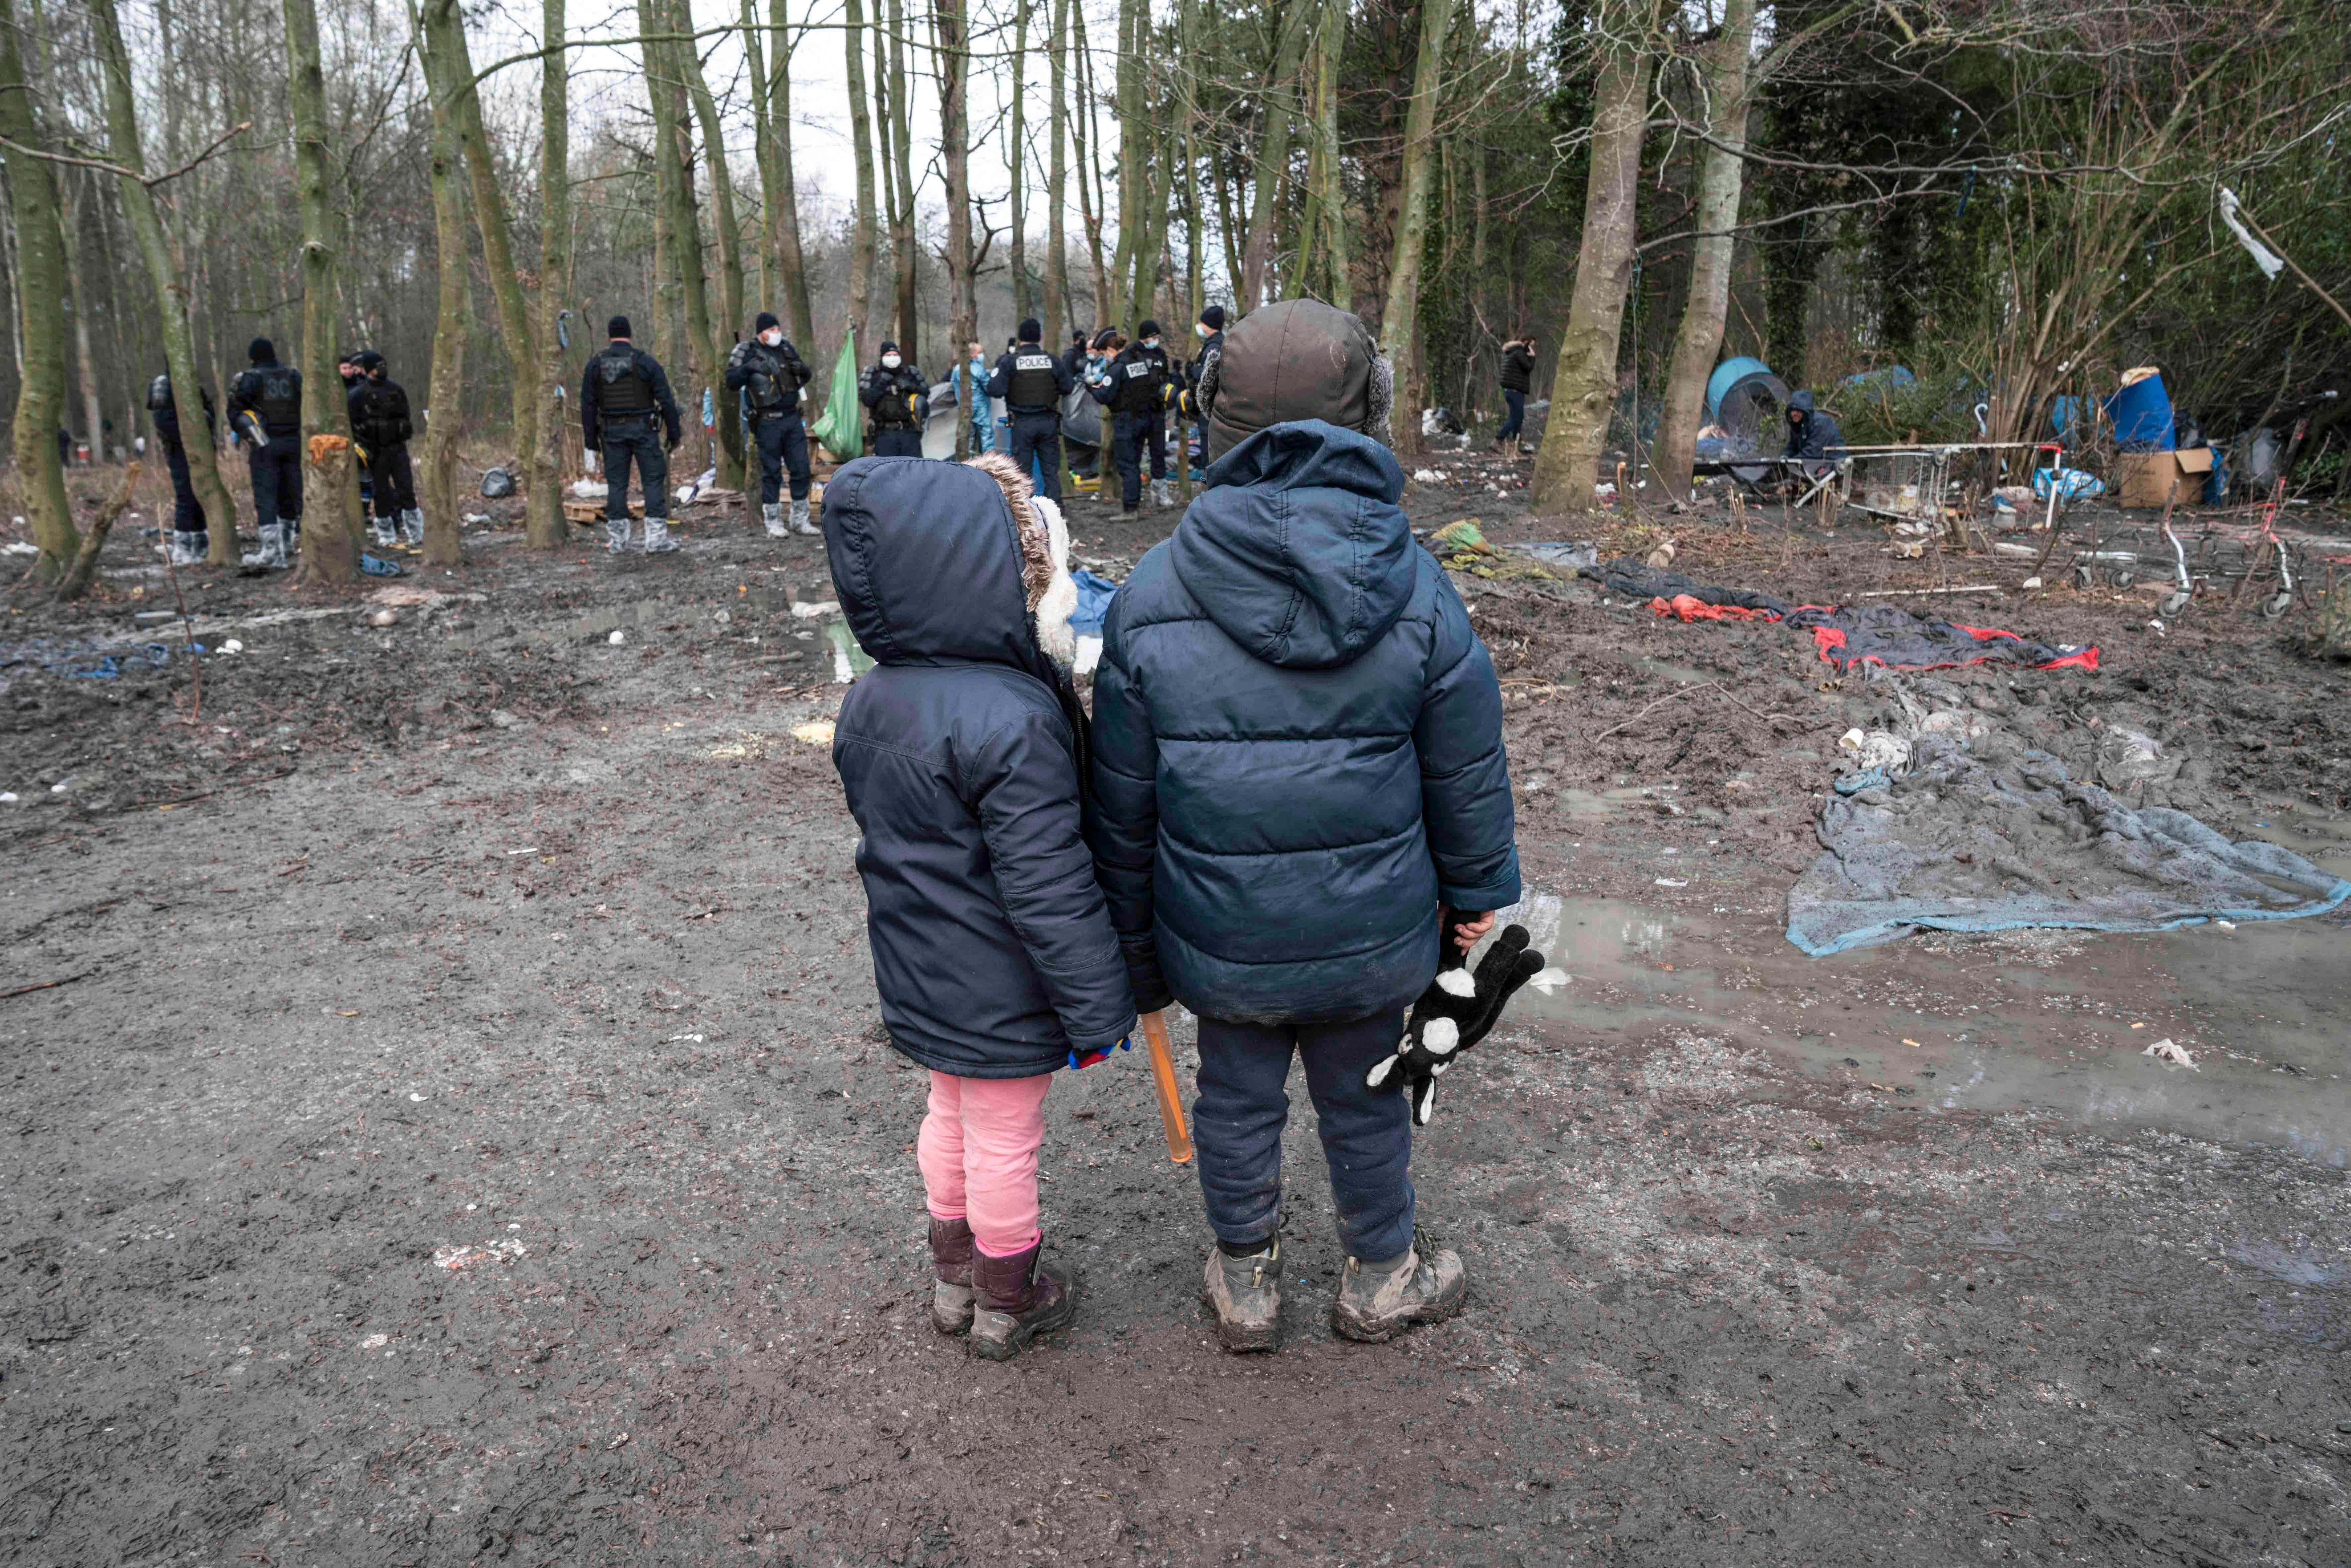 Dos niños observan cómo la policía confisca su tienda de campaña durante el desalojo de un campamento de inmigrantes en Grande-Synthe, en el norte de Francia, el 21 de enero de 2021.